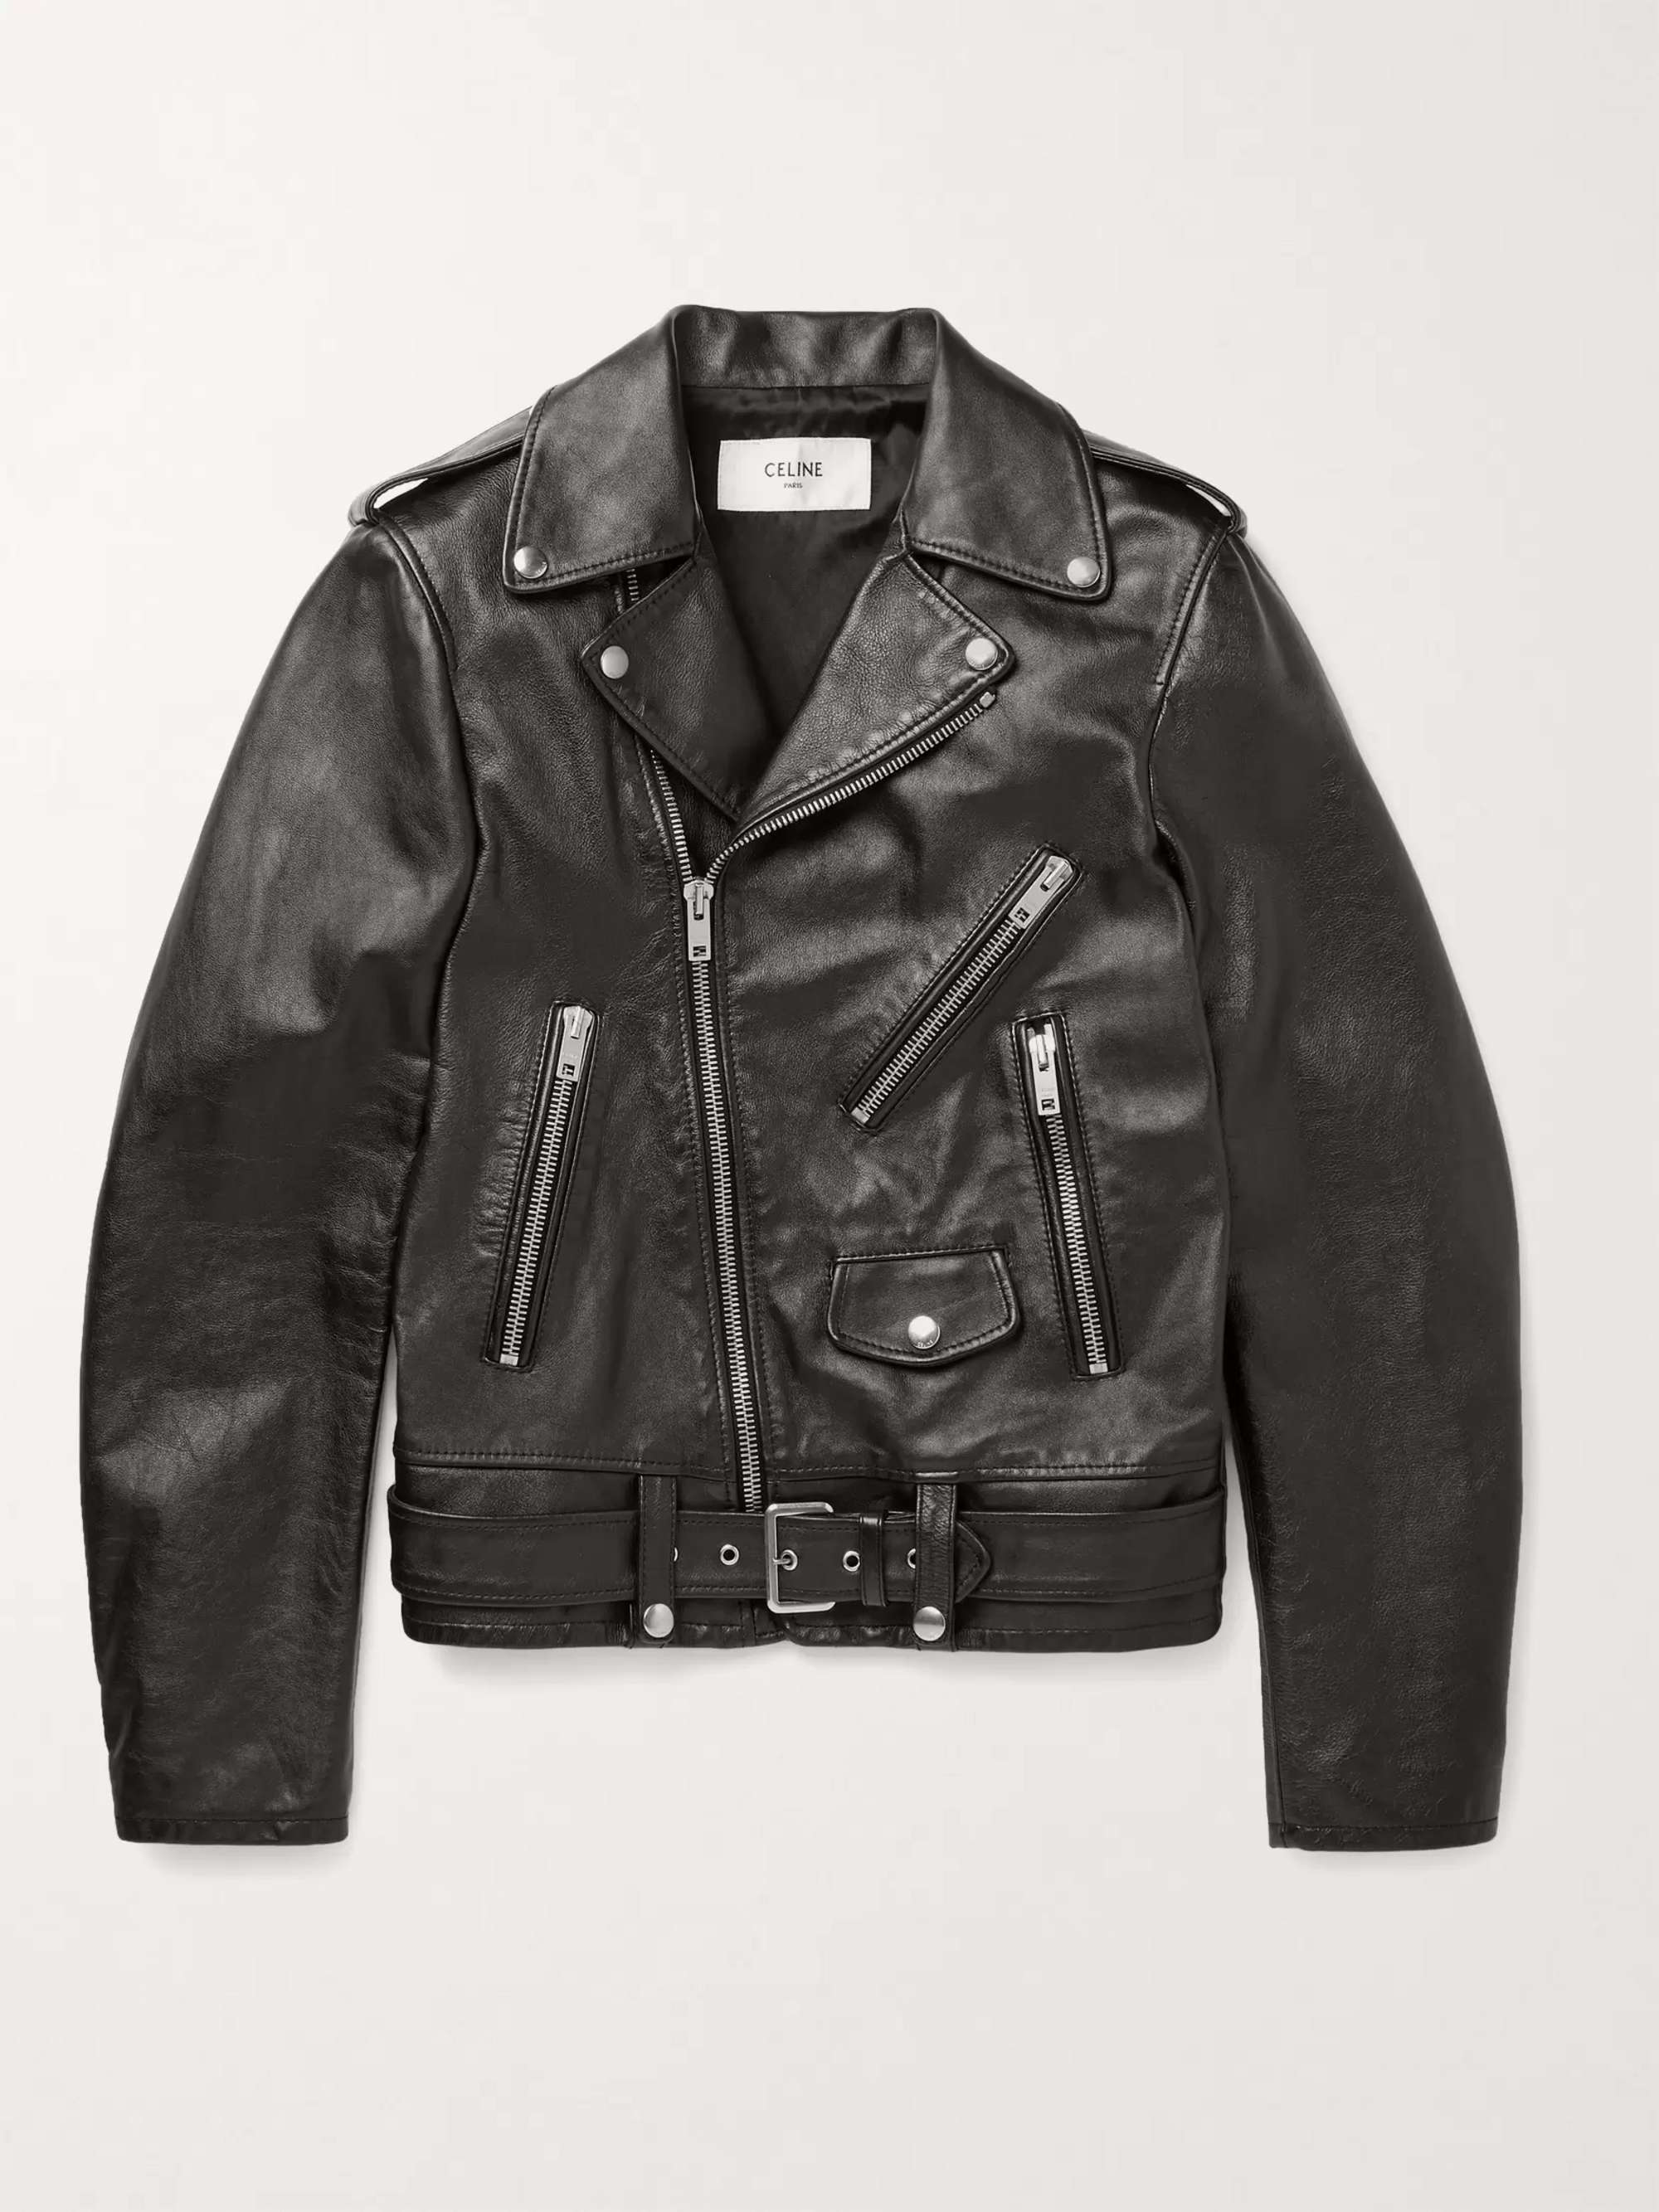 CELINE HOMME Leather Jacket | MR PORTER